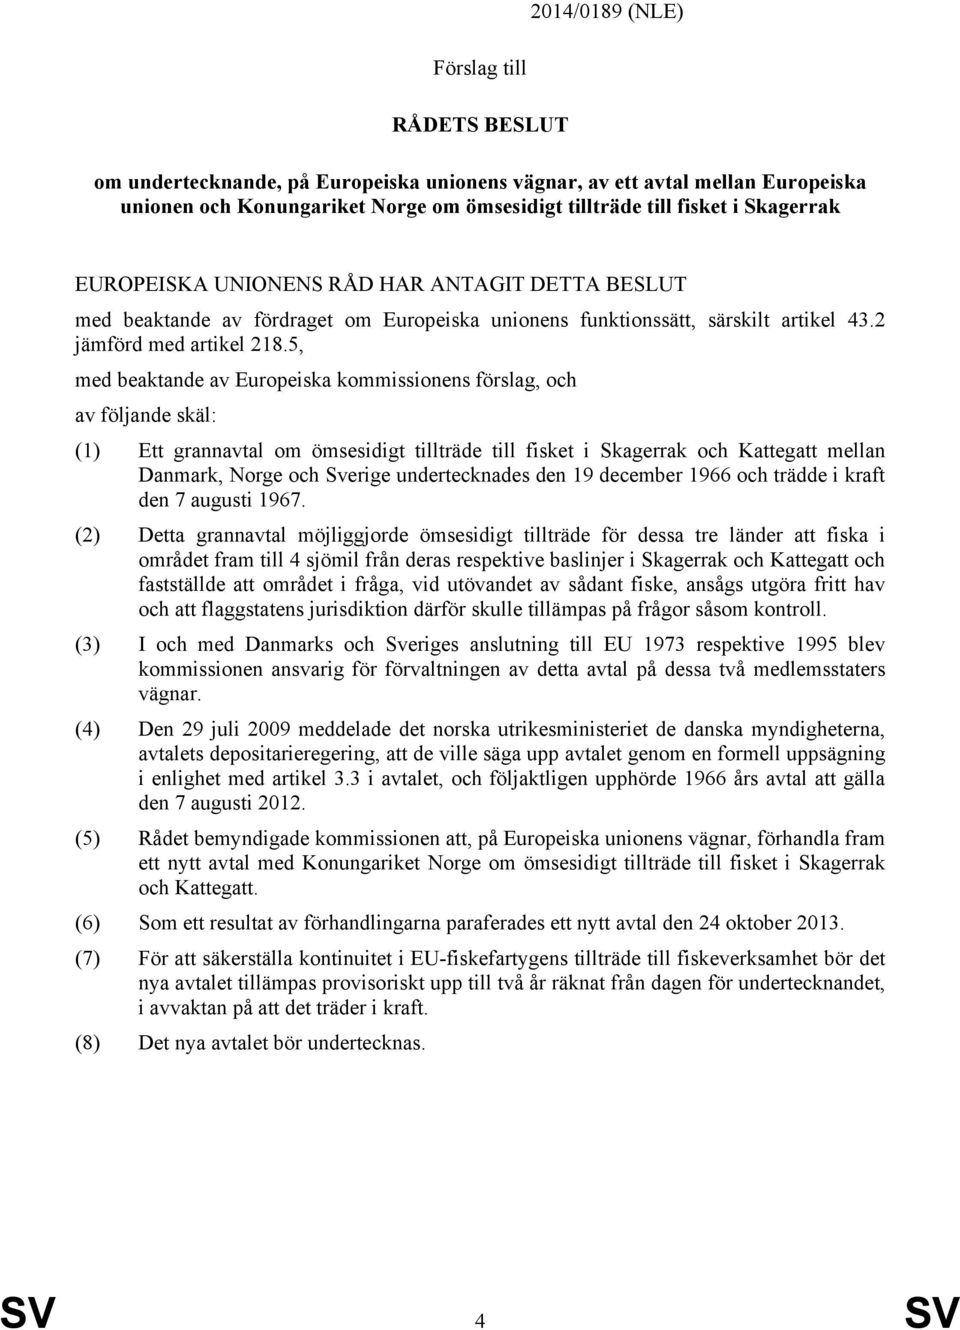 5, med beaktande av Europeiska kommissionens förslag, och av följande skäl: (1) Ett grannavtal om ömsesidigt tillträde till fisket i Skagerrak och Kattegatt mellan Danmark, Norge och Sverige